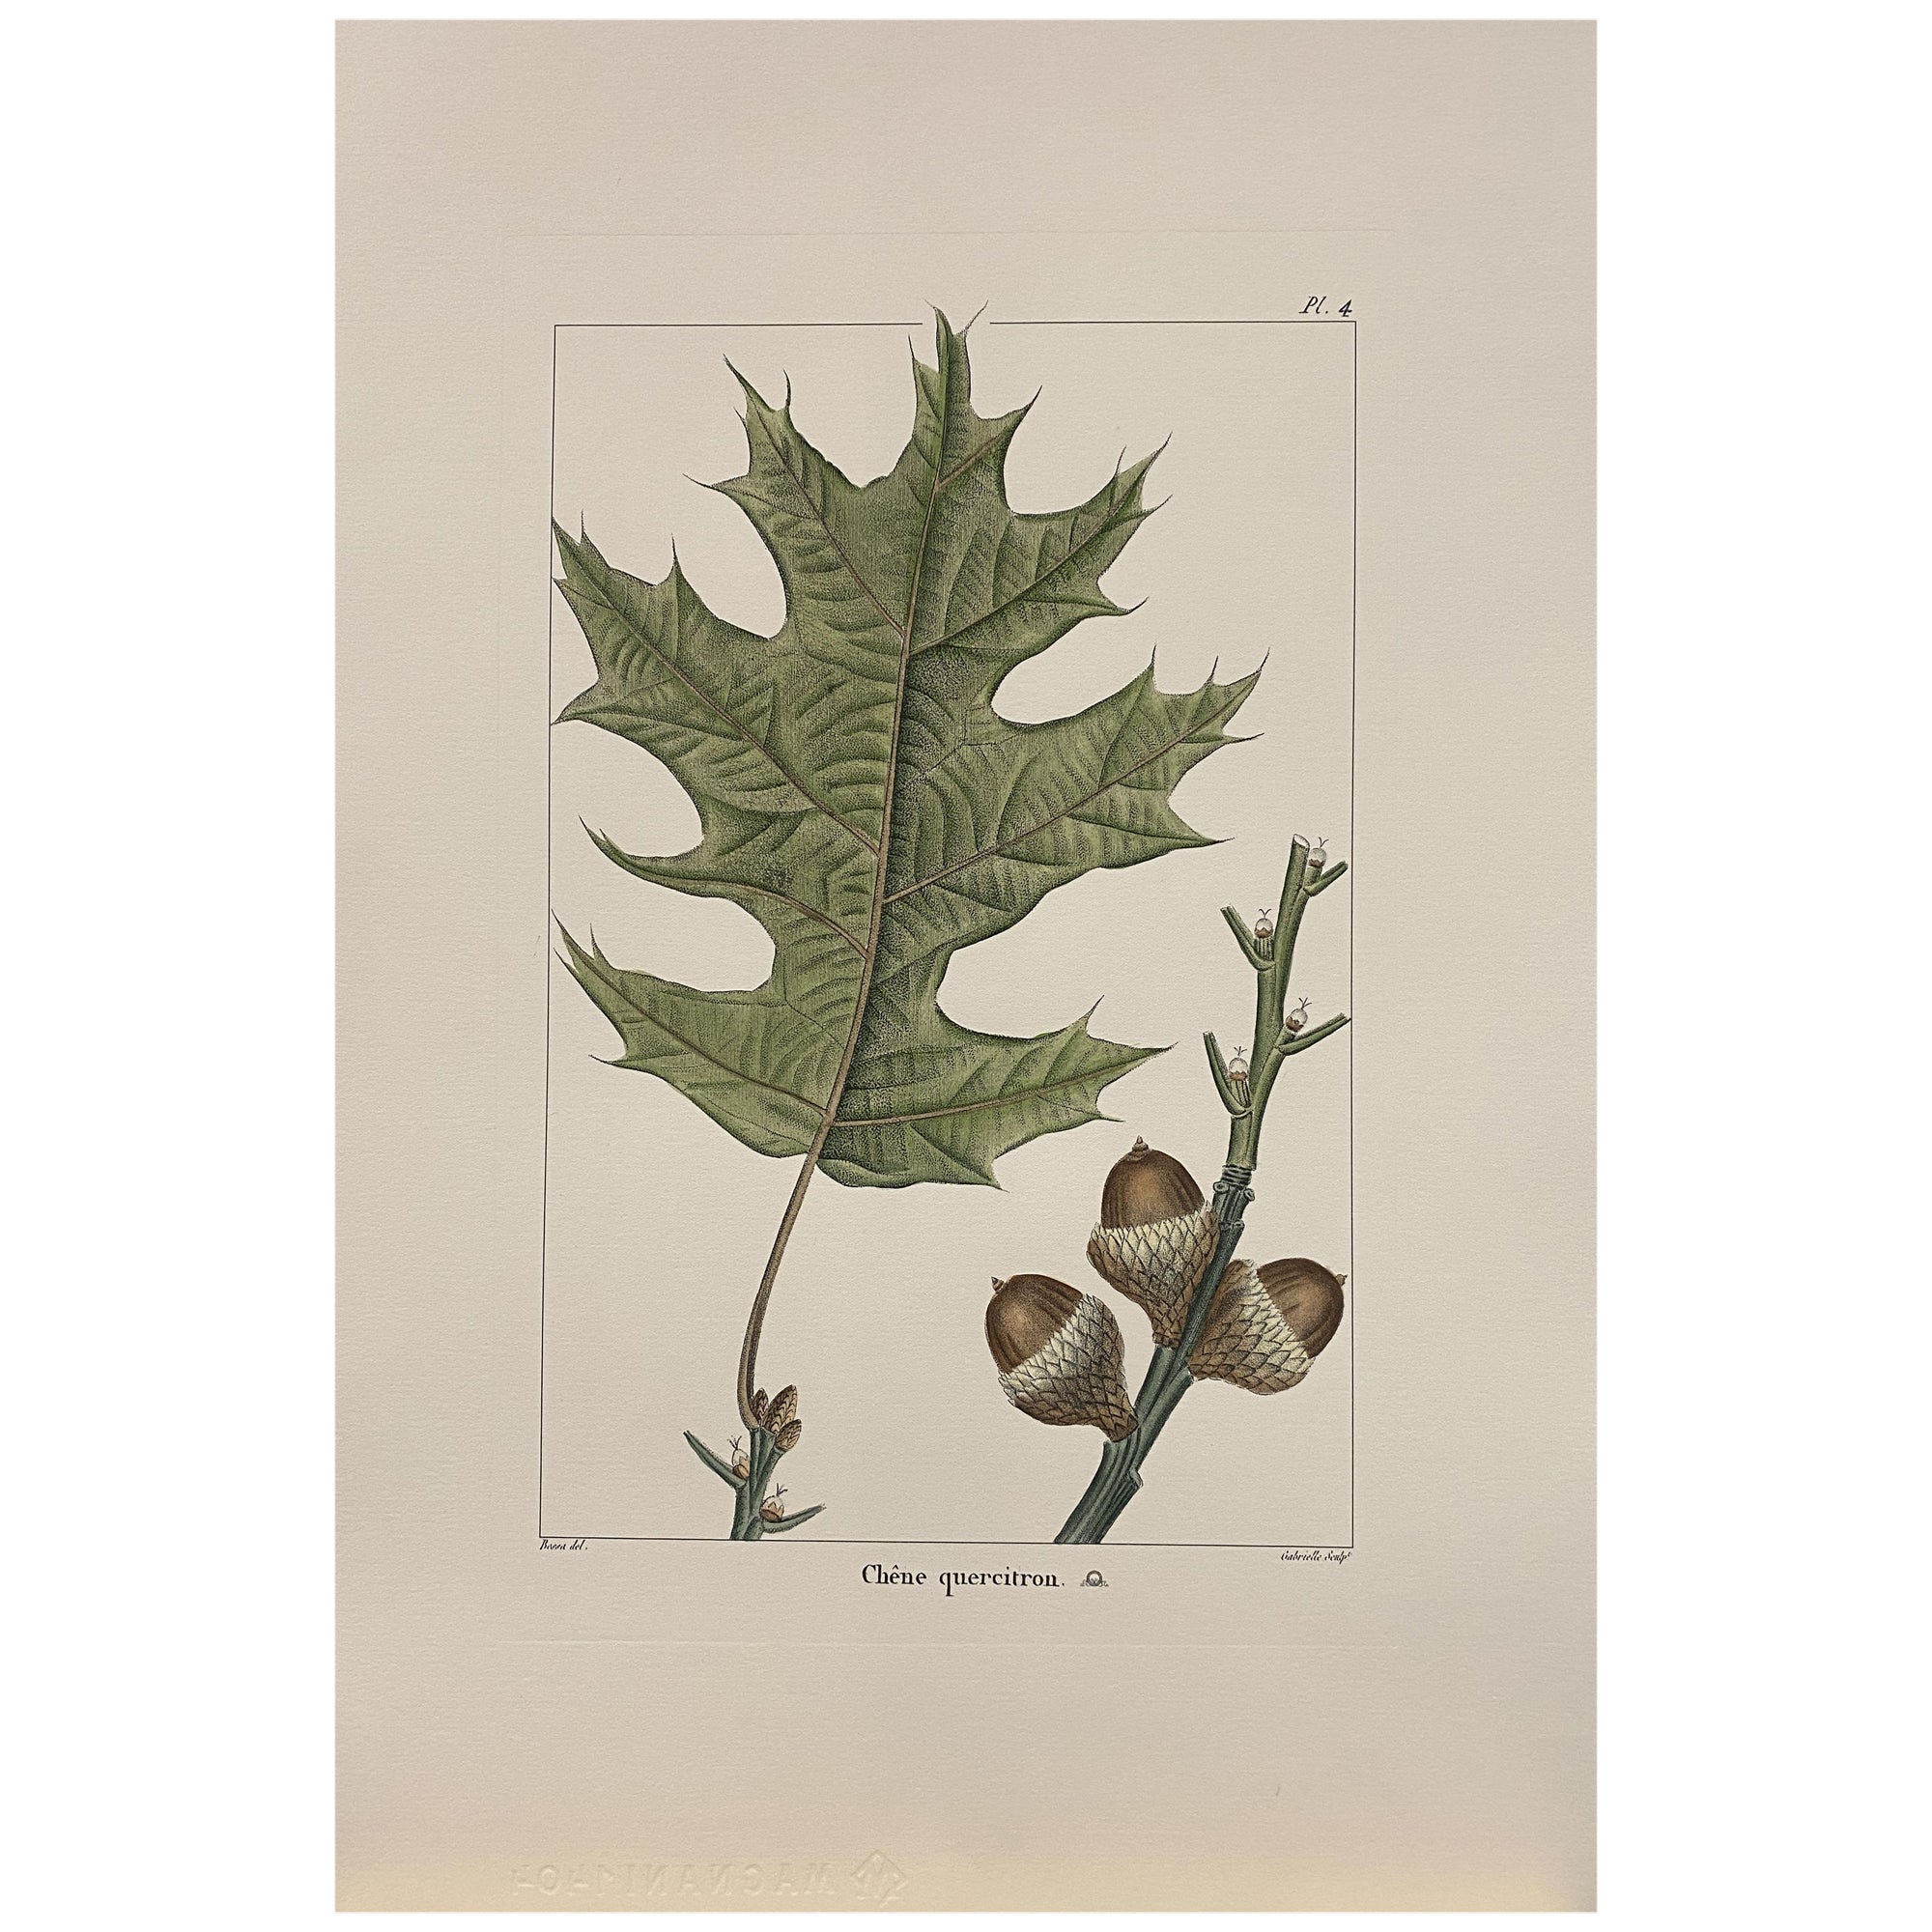 Gravure botanique italienne contemporaine peinte à la main "Chene Quercitron" 4 de 4